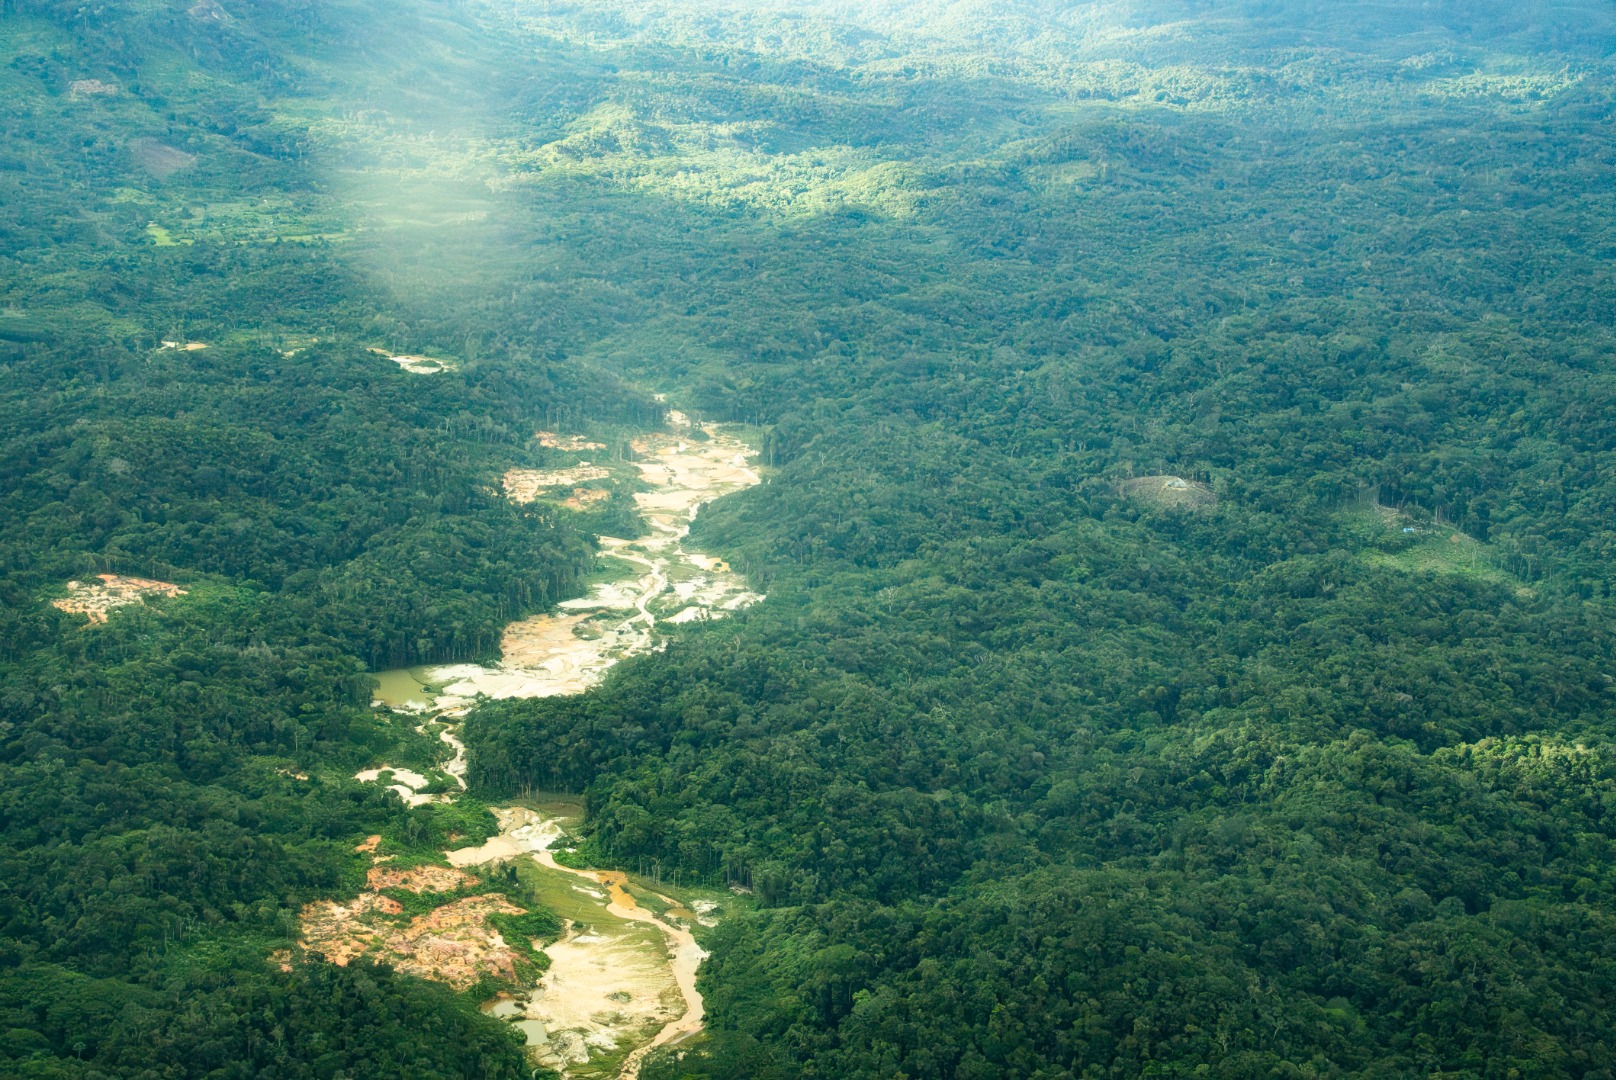 O Comitê Interministerial de Desintrusão de Terras Indígenas decidiu reforçar e prosseguir as ações realizadas na terra indígena Yanomami